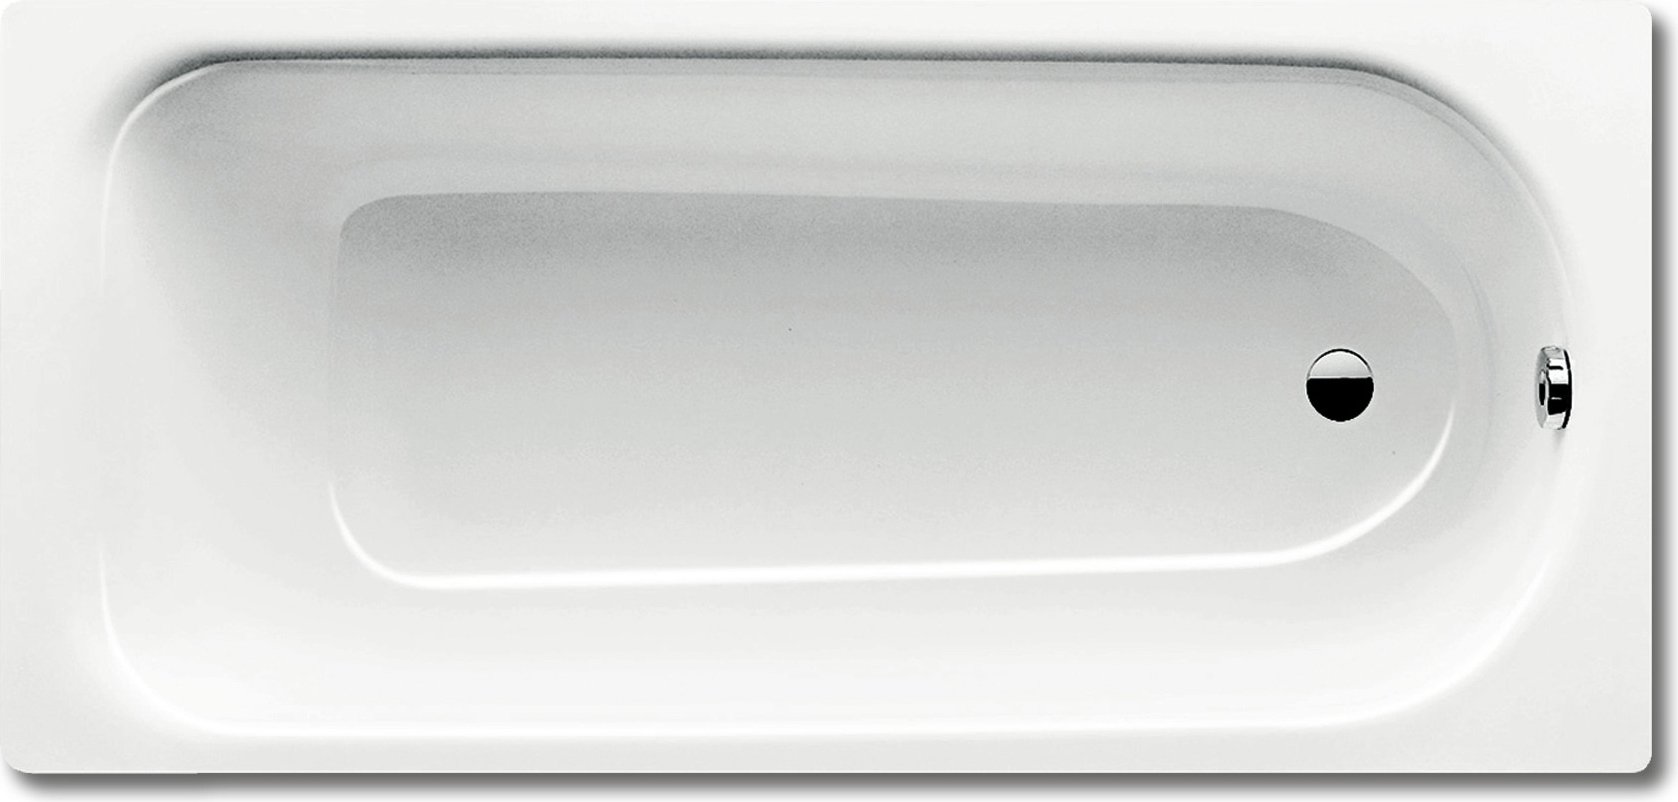 Стальная ванна Kaldewei Advantage Saniform Plus 375-1 с покрытием Easy-Clean 180x80, белый, сталь  - купить со скидкой